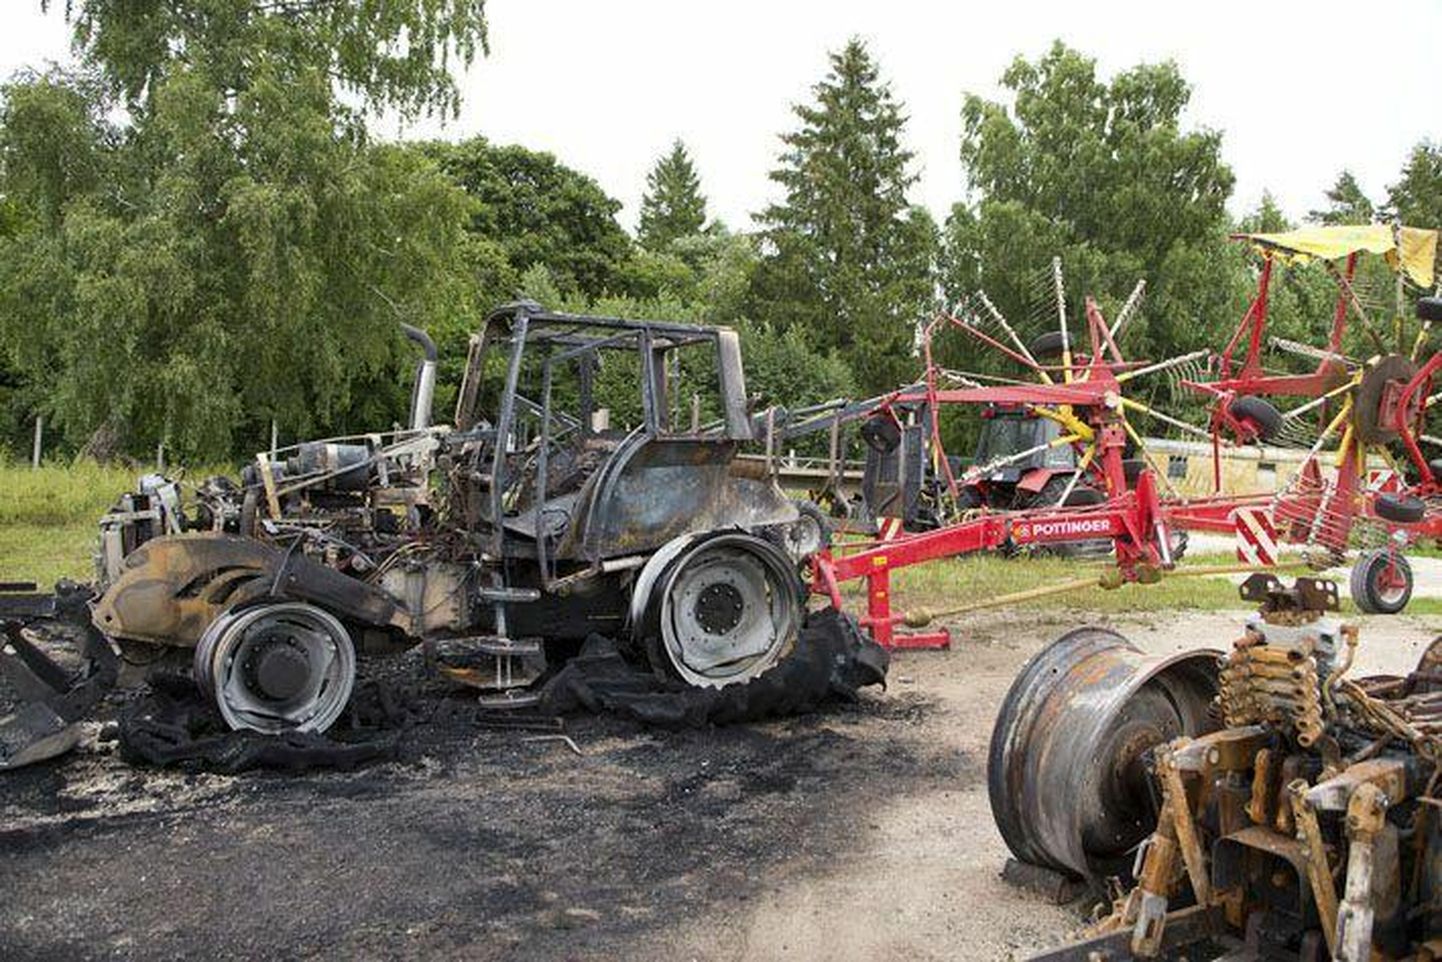 Põleva rehviga traktorist kaasliiklejate peatumismärguandele ei reageeritud. Pilt on illustreeriv.